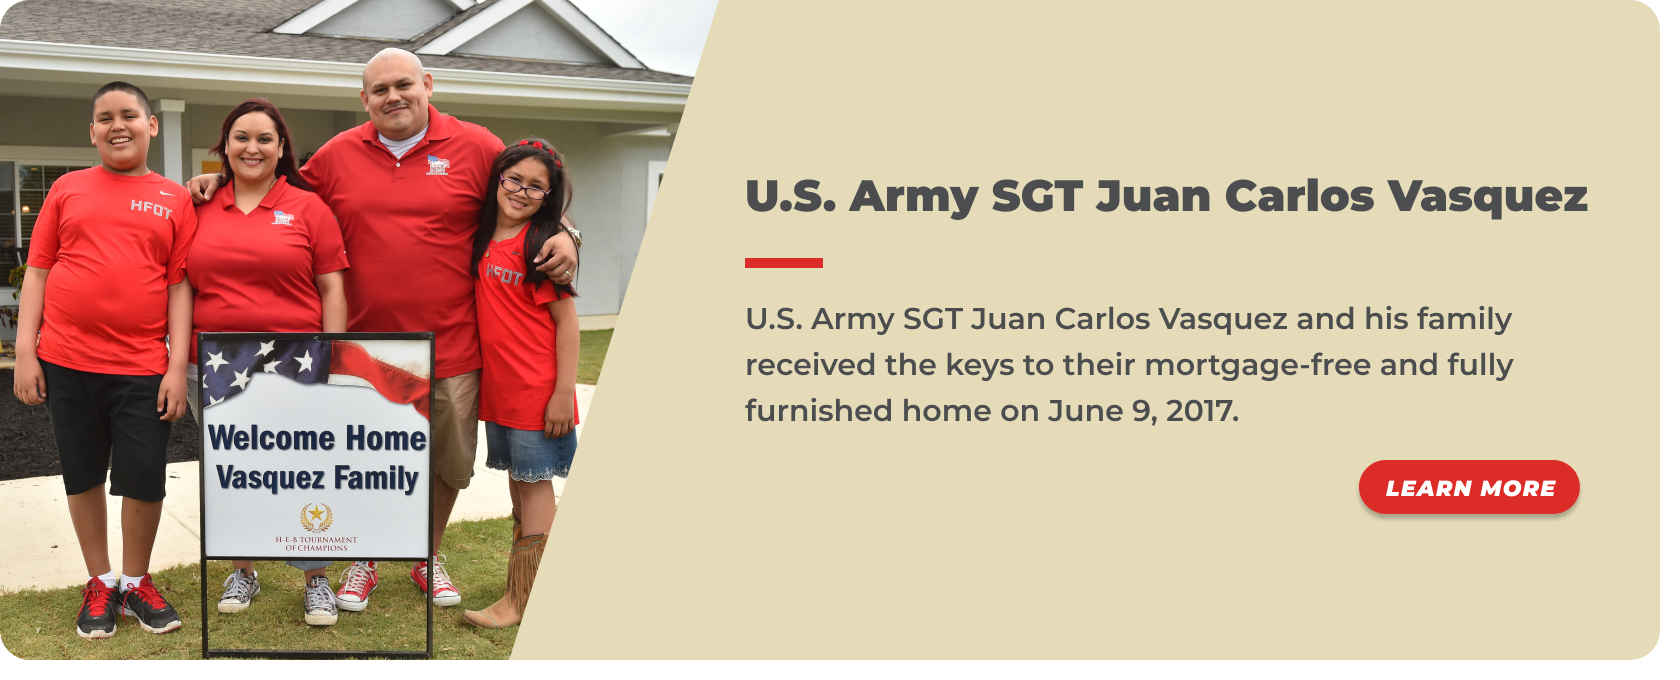 15 - U.S. Army SGT Juan Carlos Vasquez